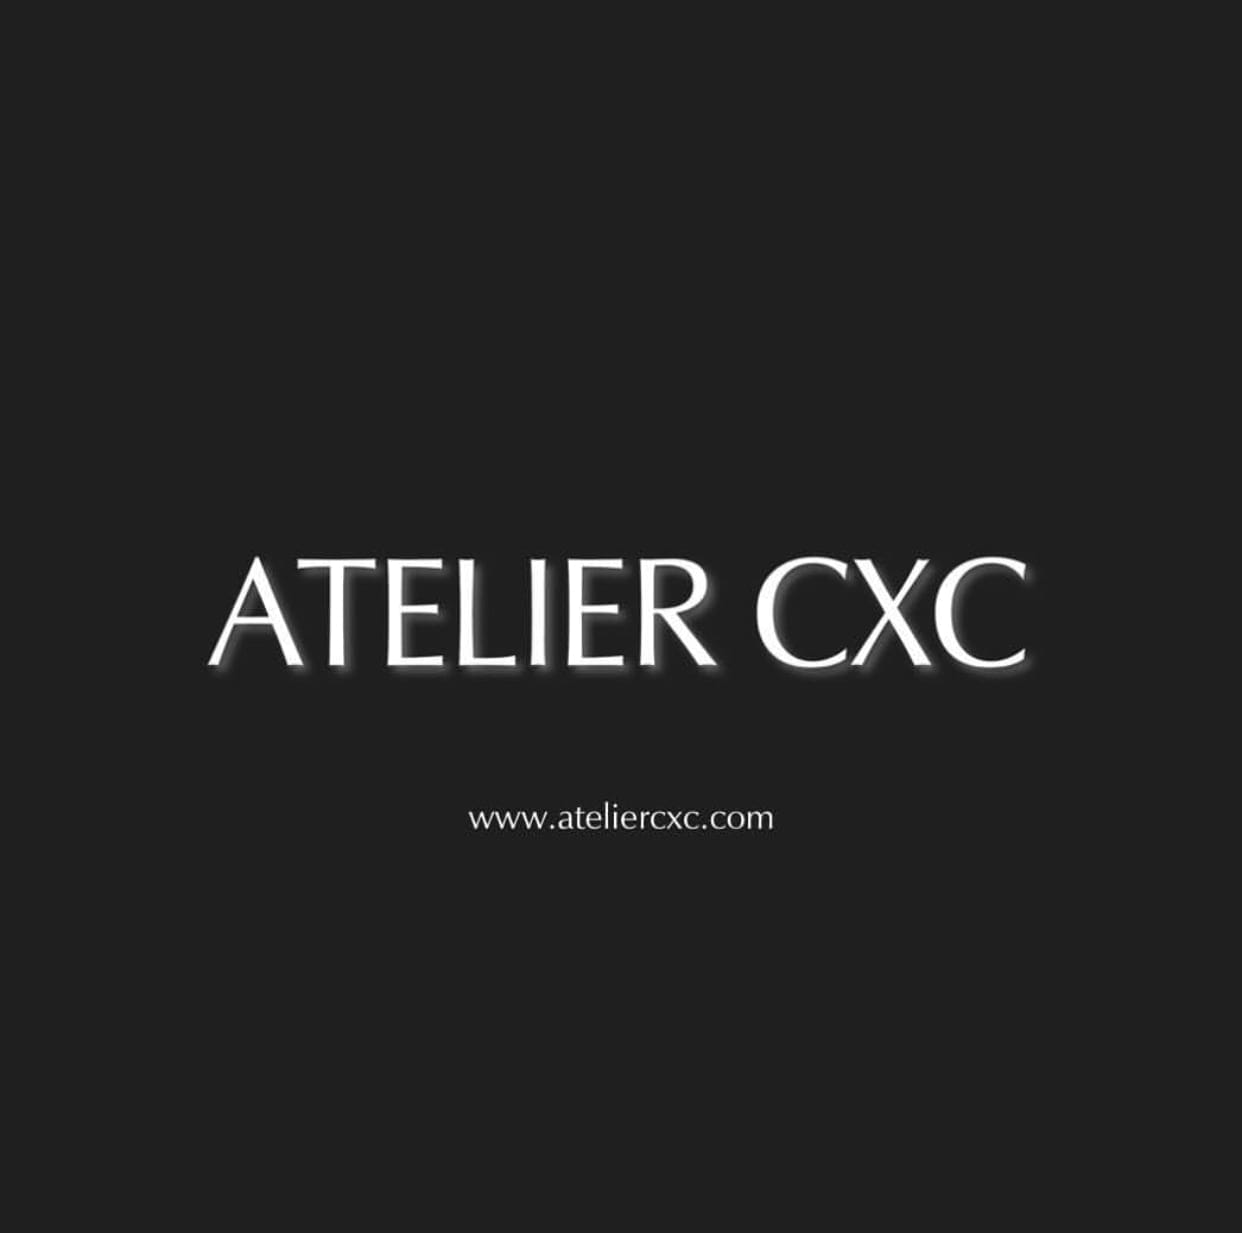 Atelier CXC